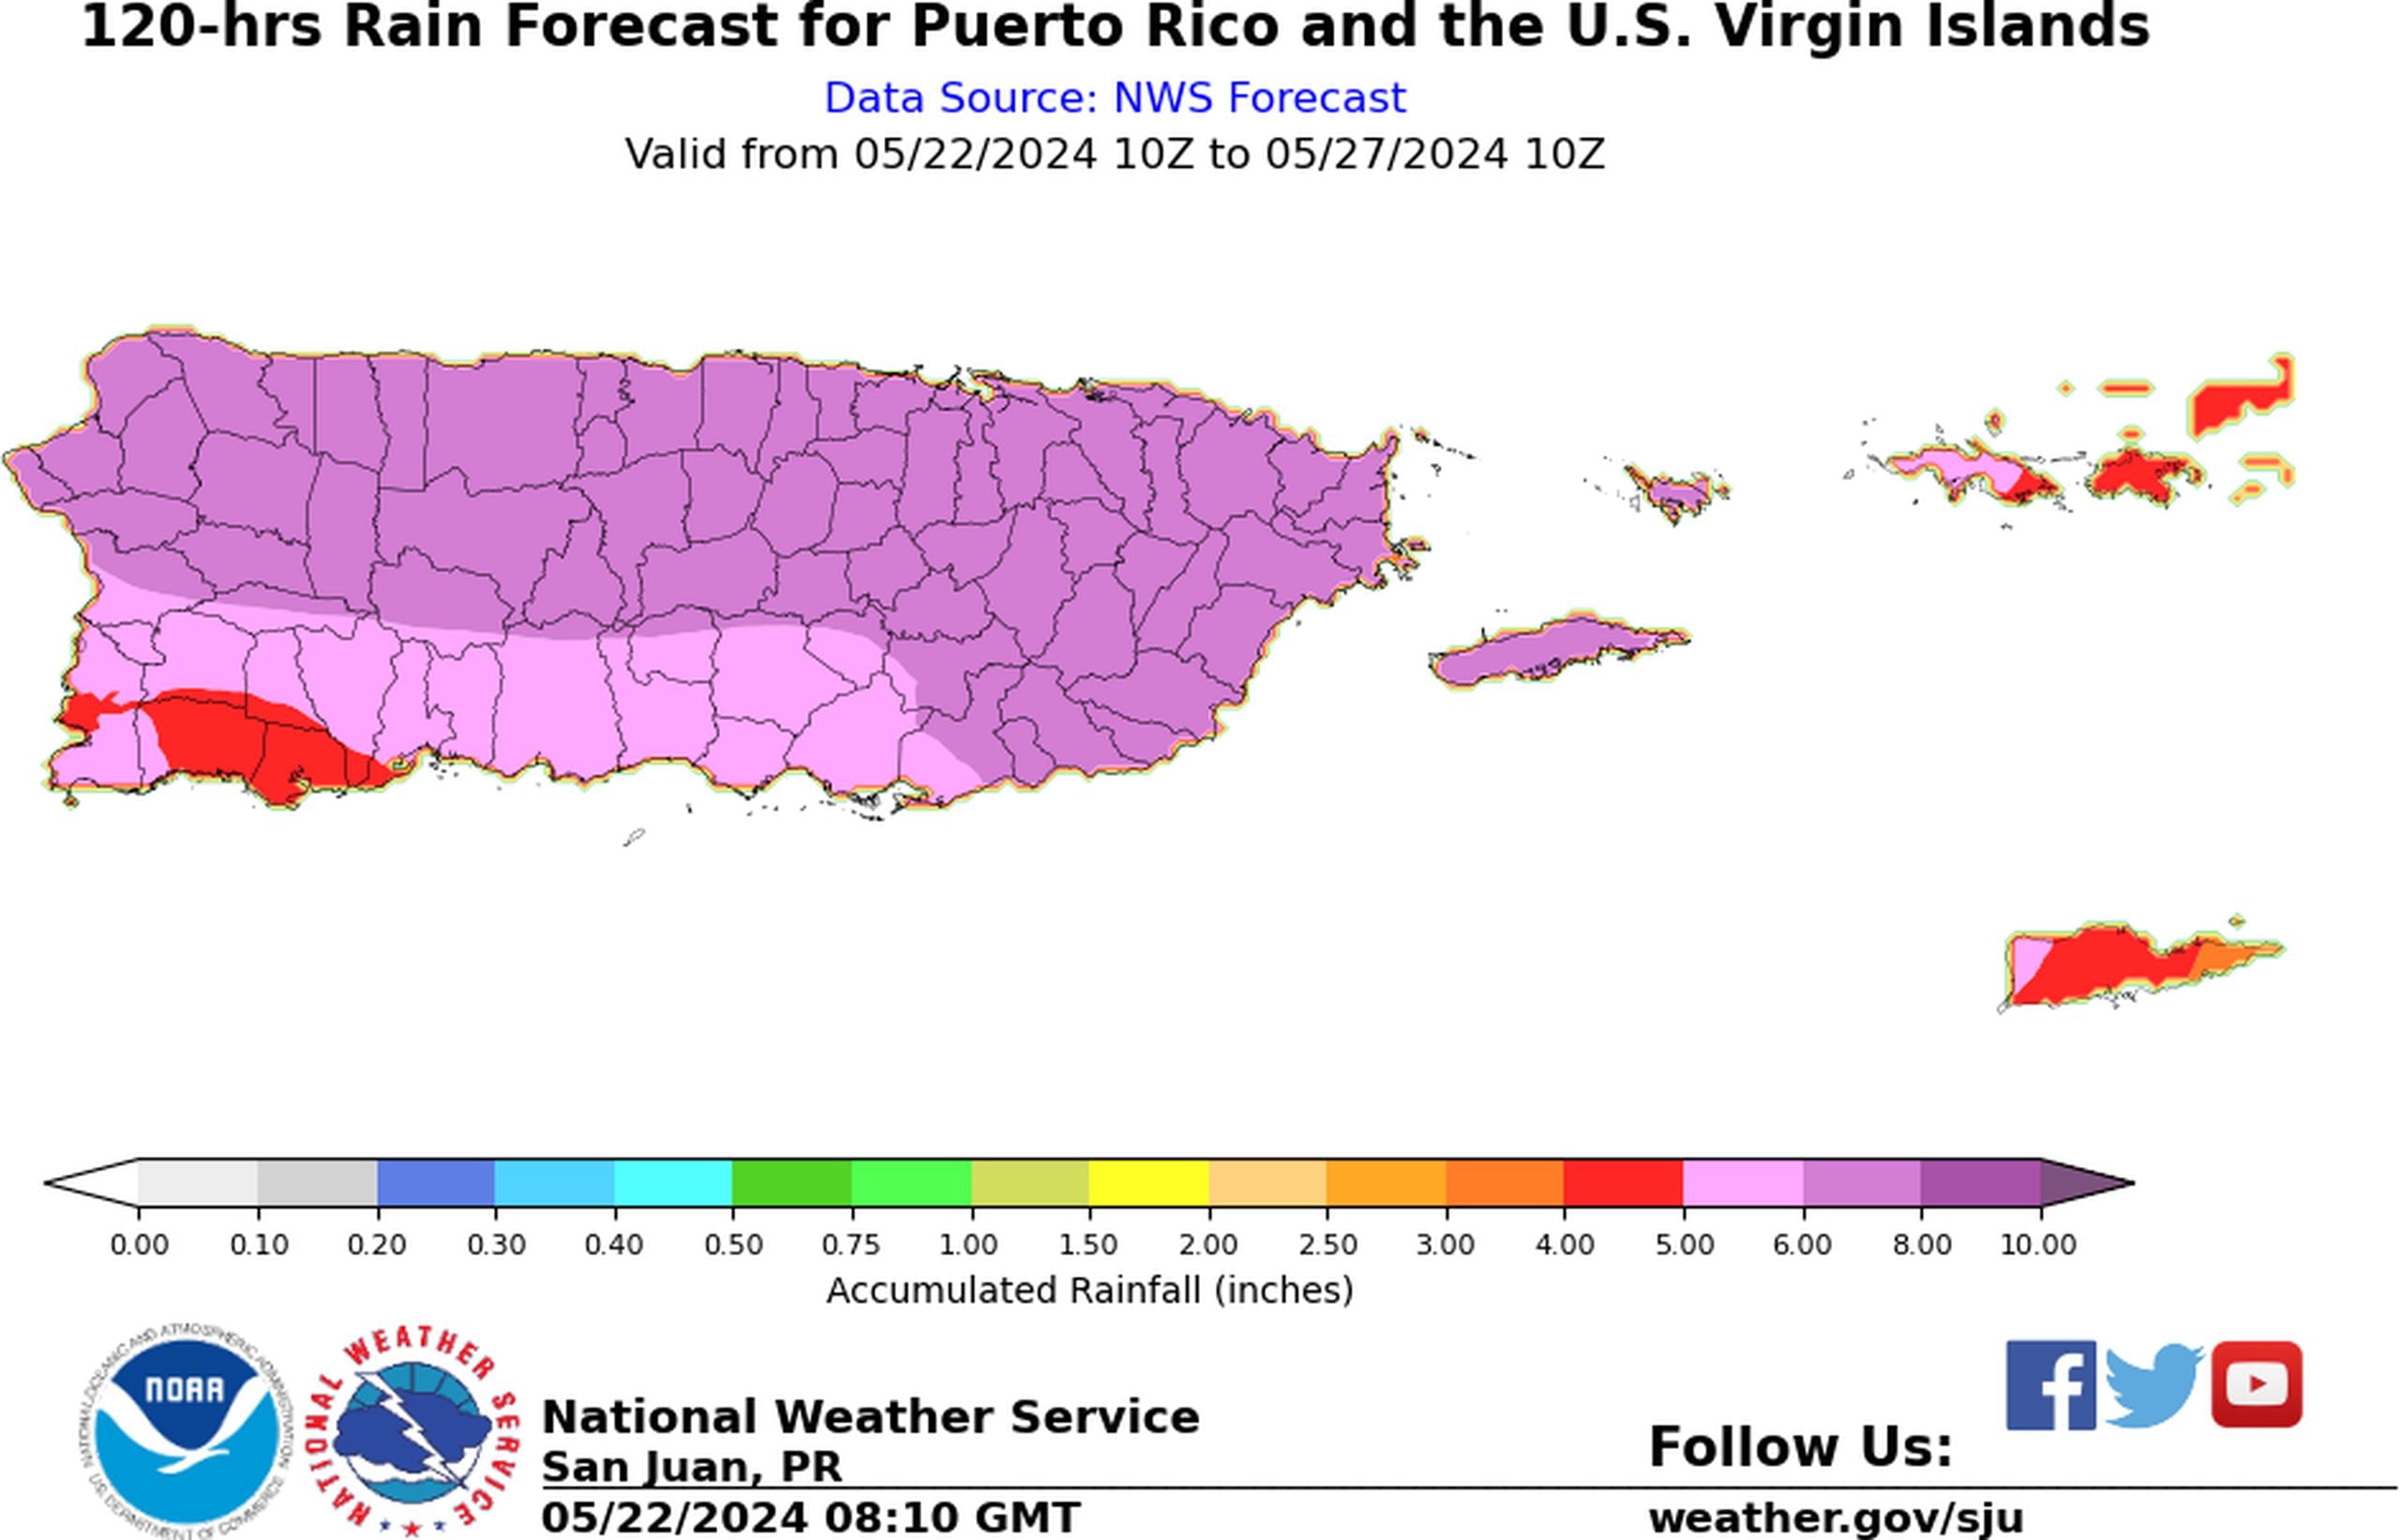 Pronóstico de lluvia para Puerto Rico del 22 al 27 de mayo de 2024.